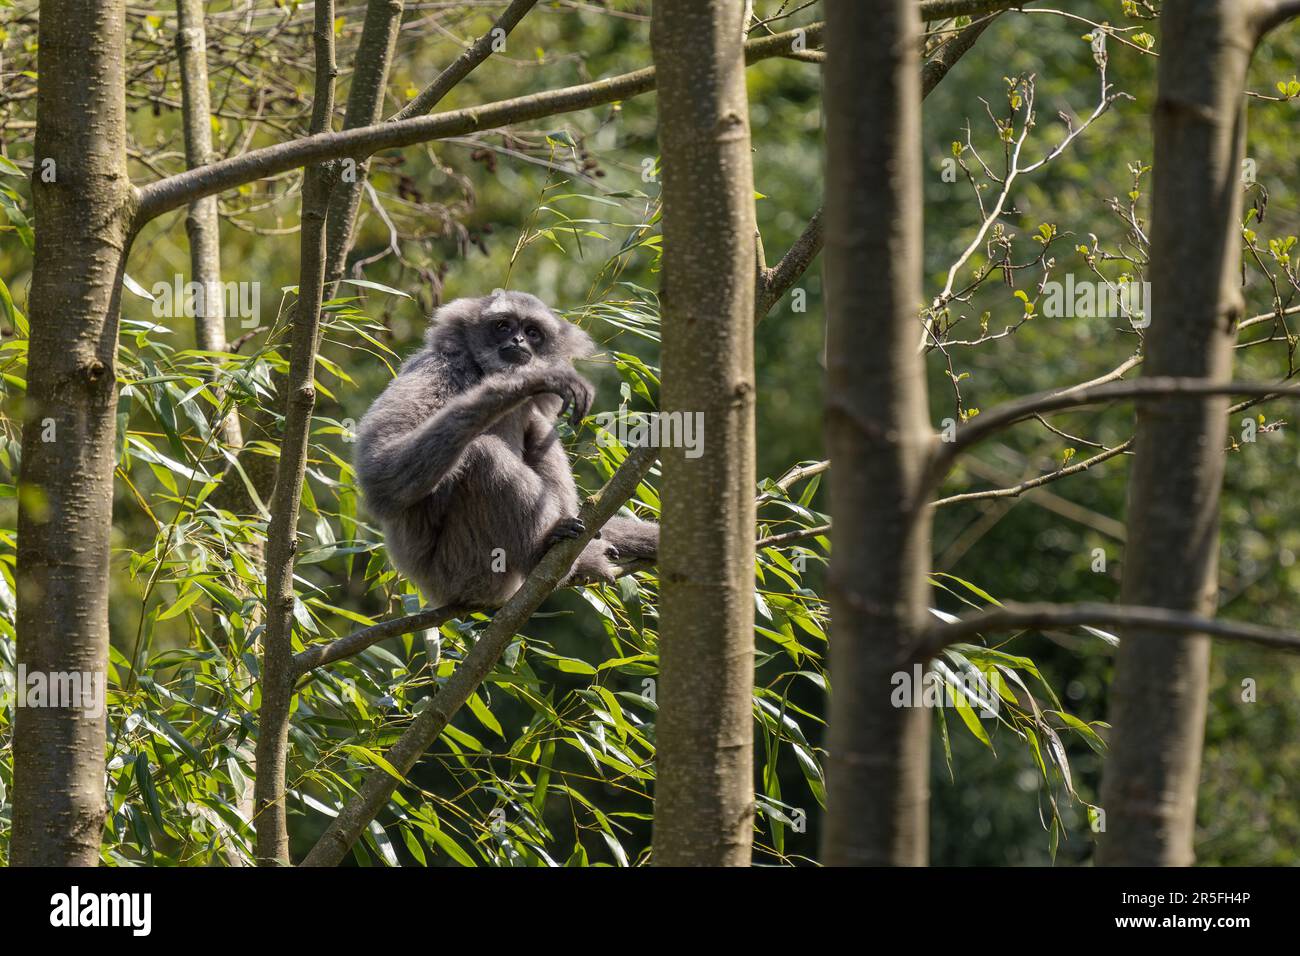 Silvery Gibbon - Hylobates moloch, hermoso primate endémico en los bosques de Java, Indonesia. Foto de stock